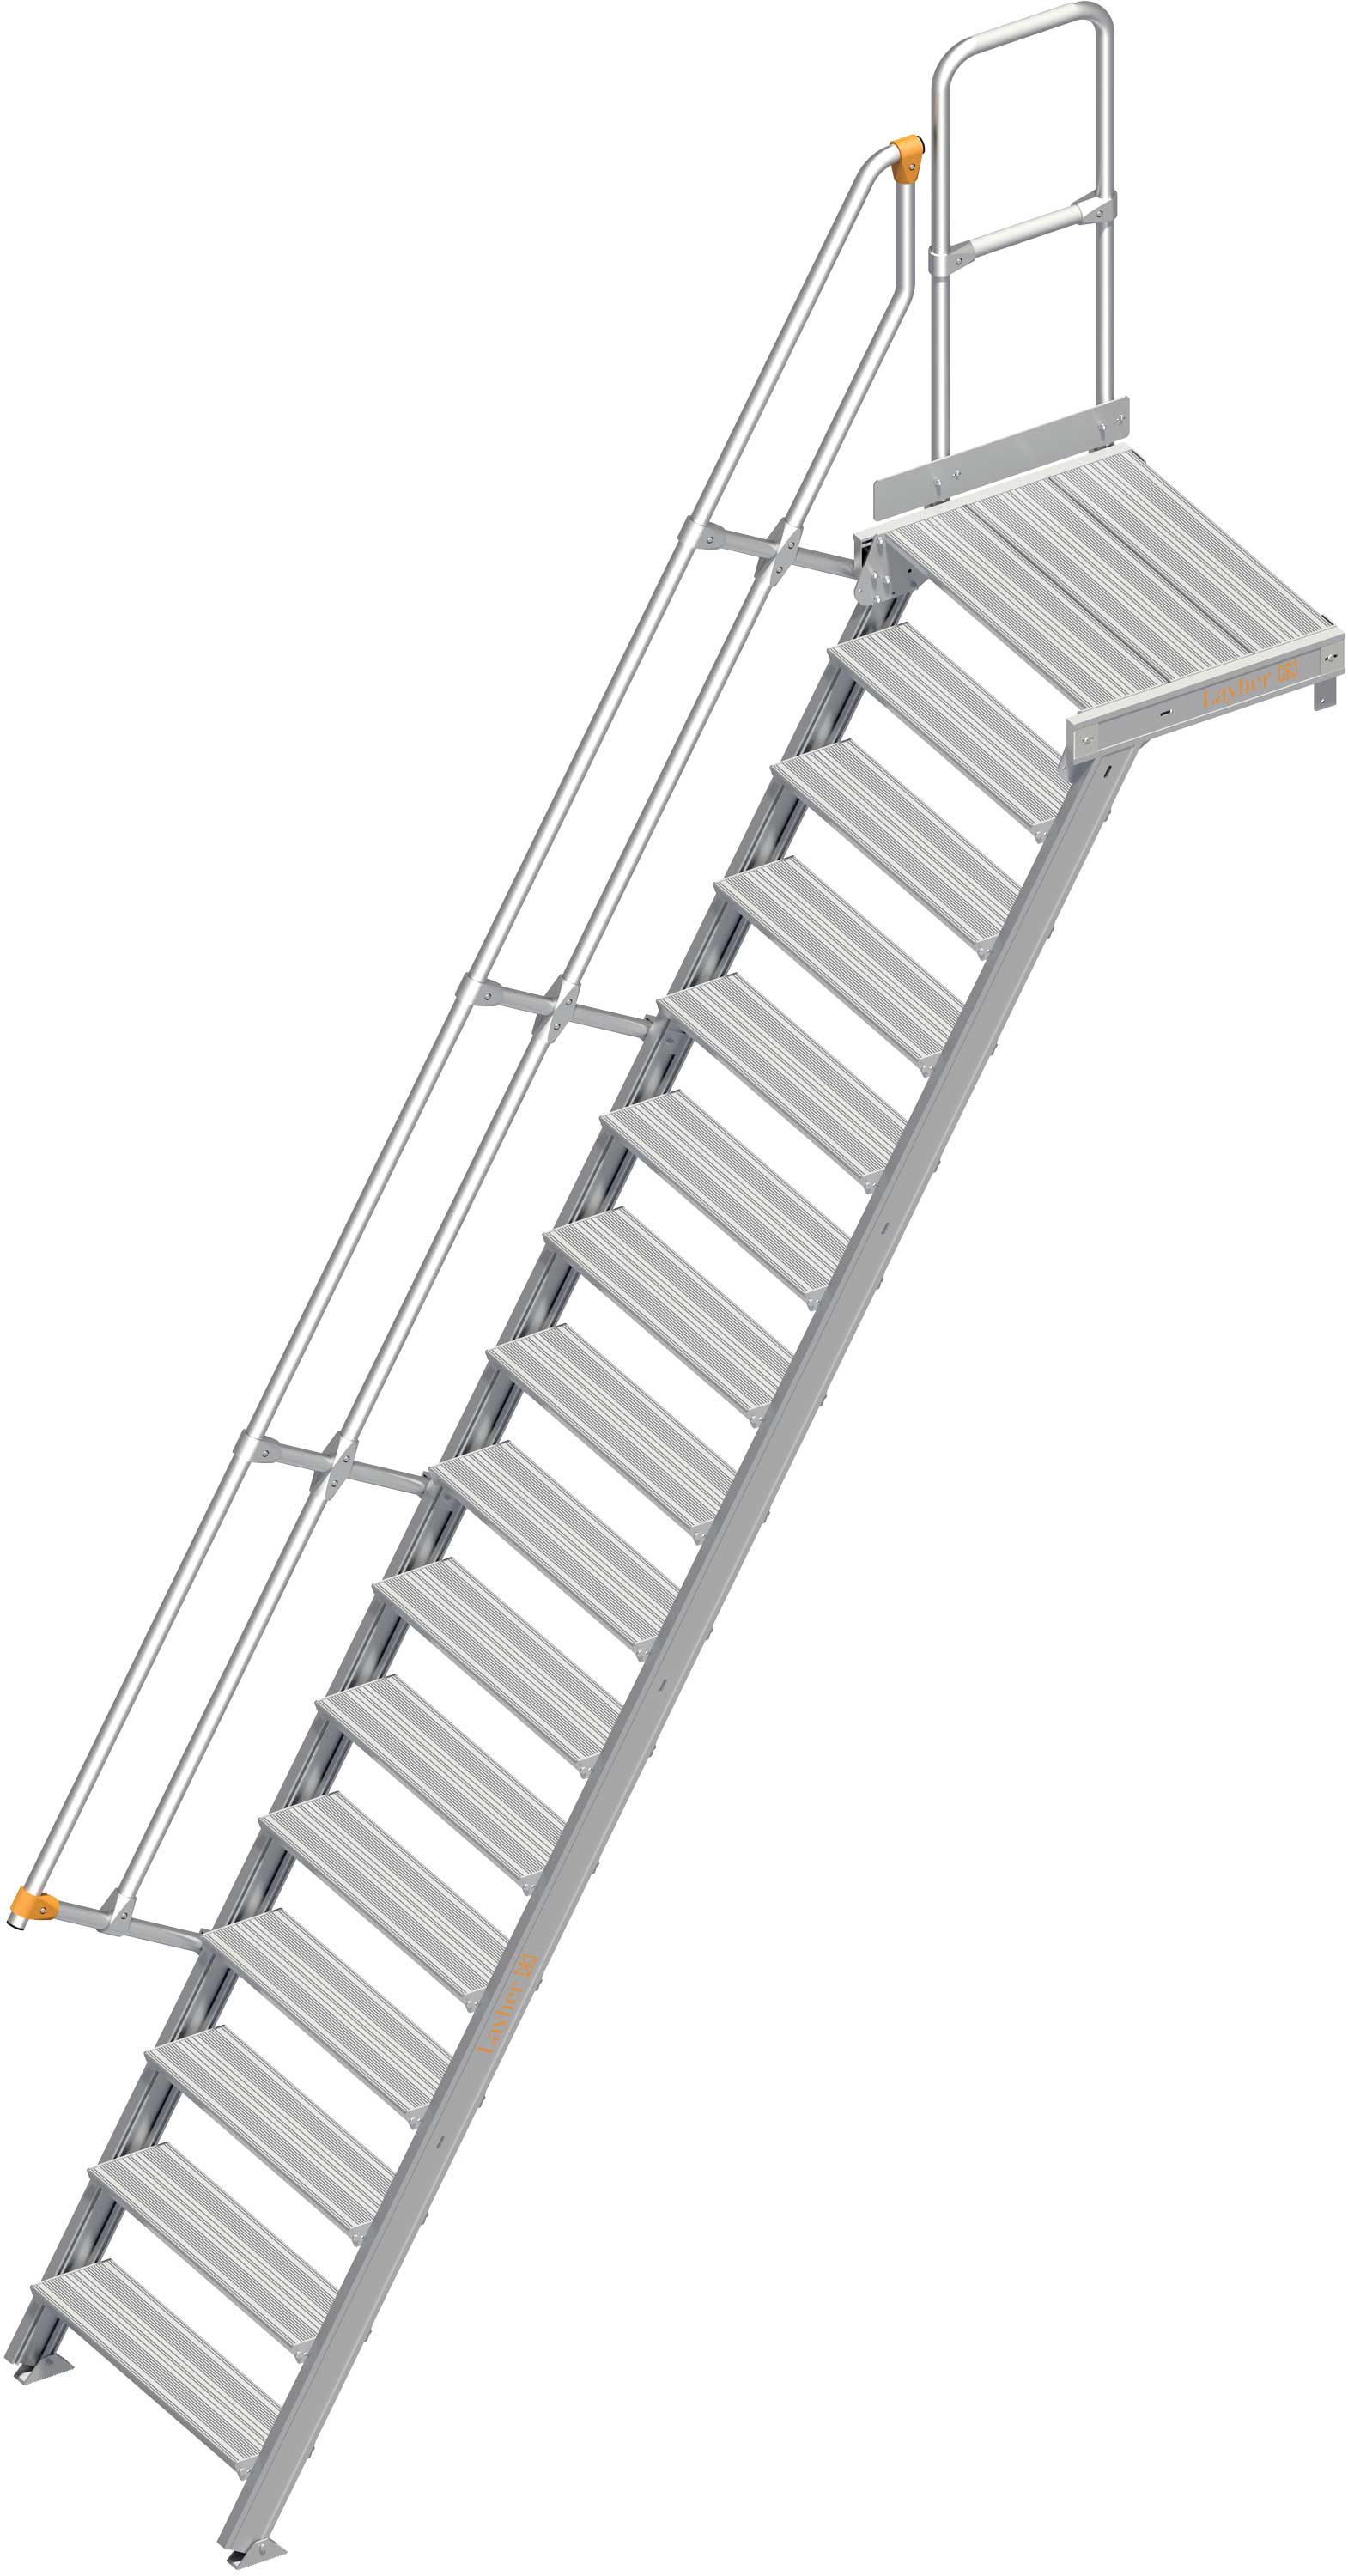 Layher Plattformtreppe 60° 16 Stufen - 800 mm breit